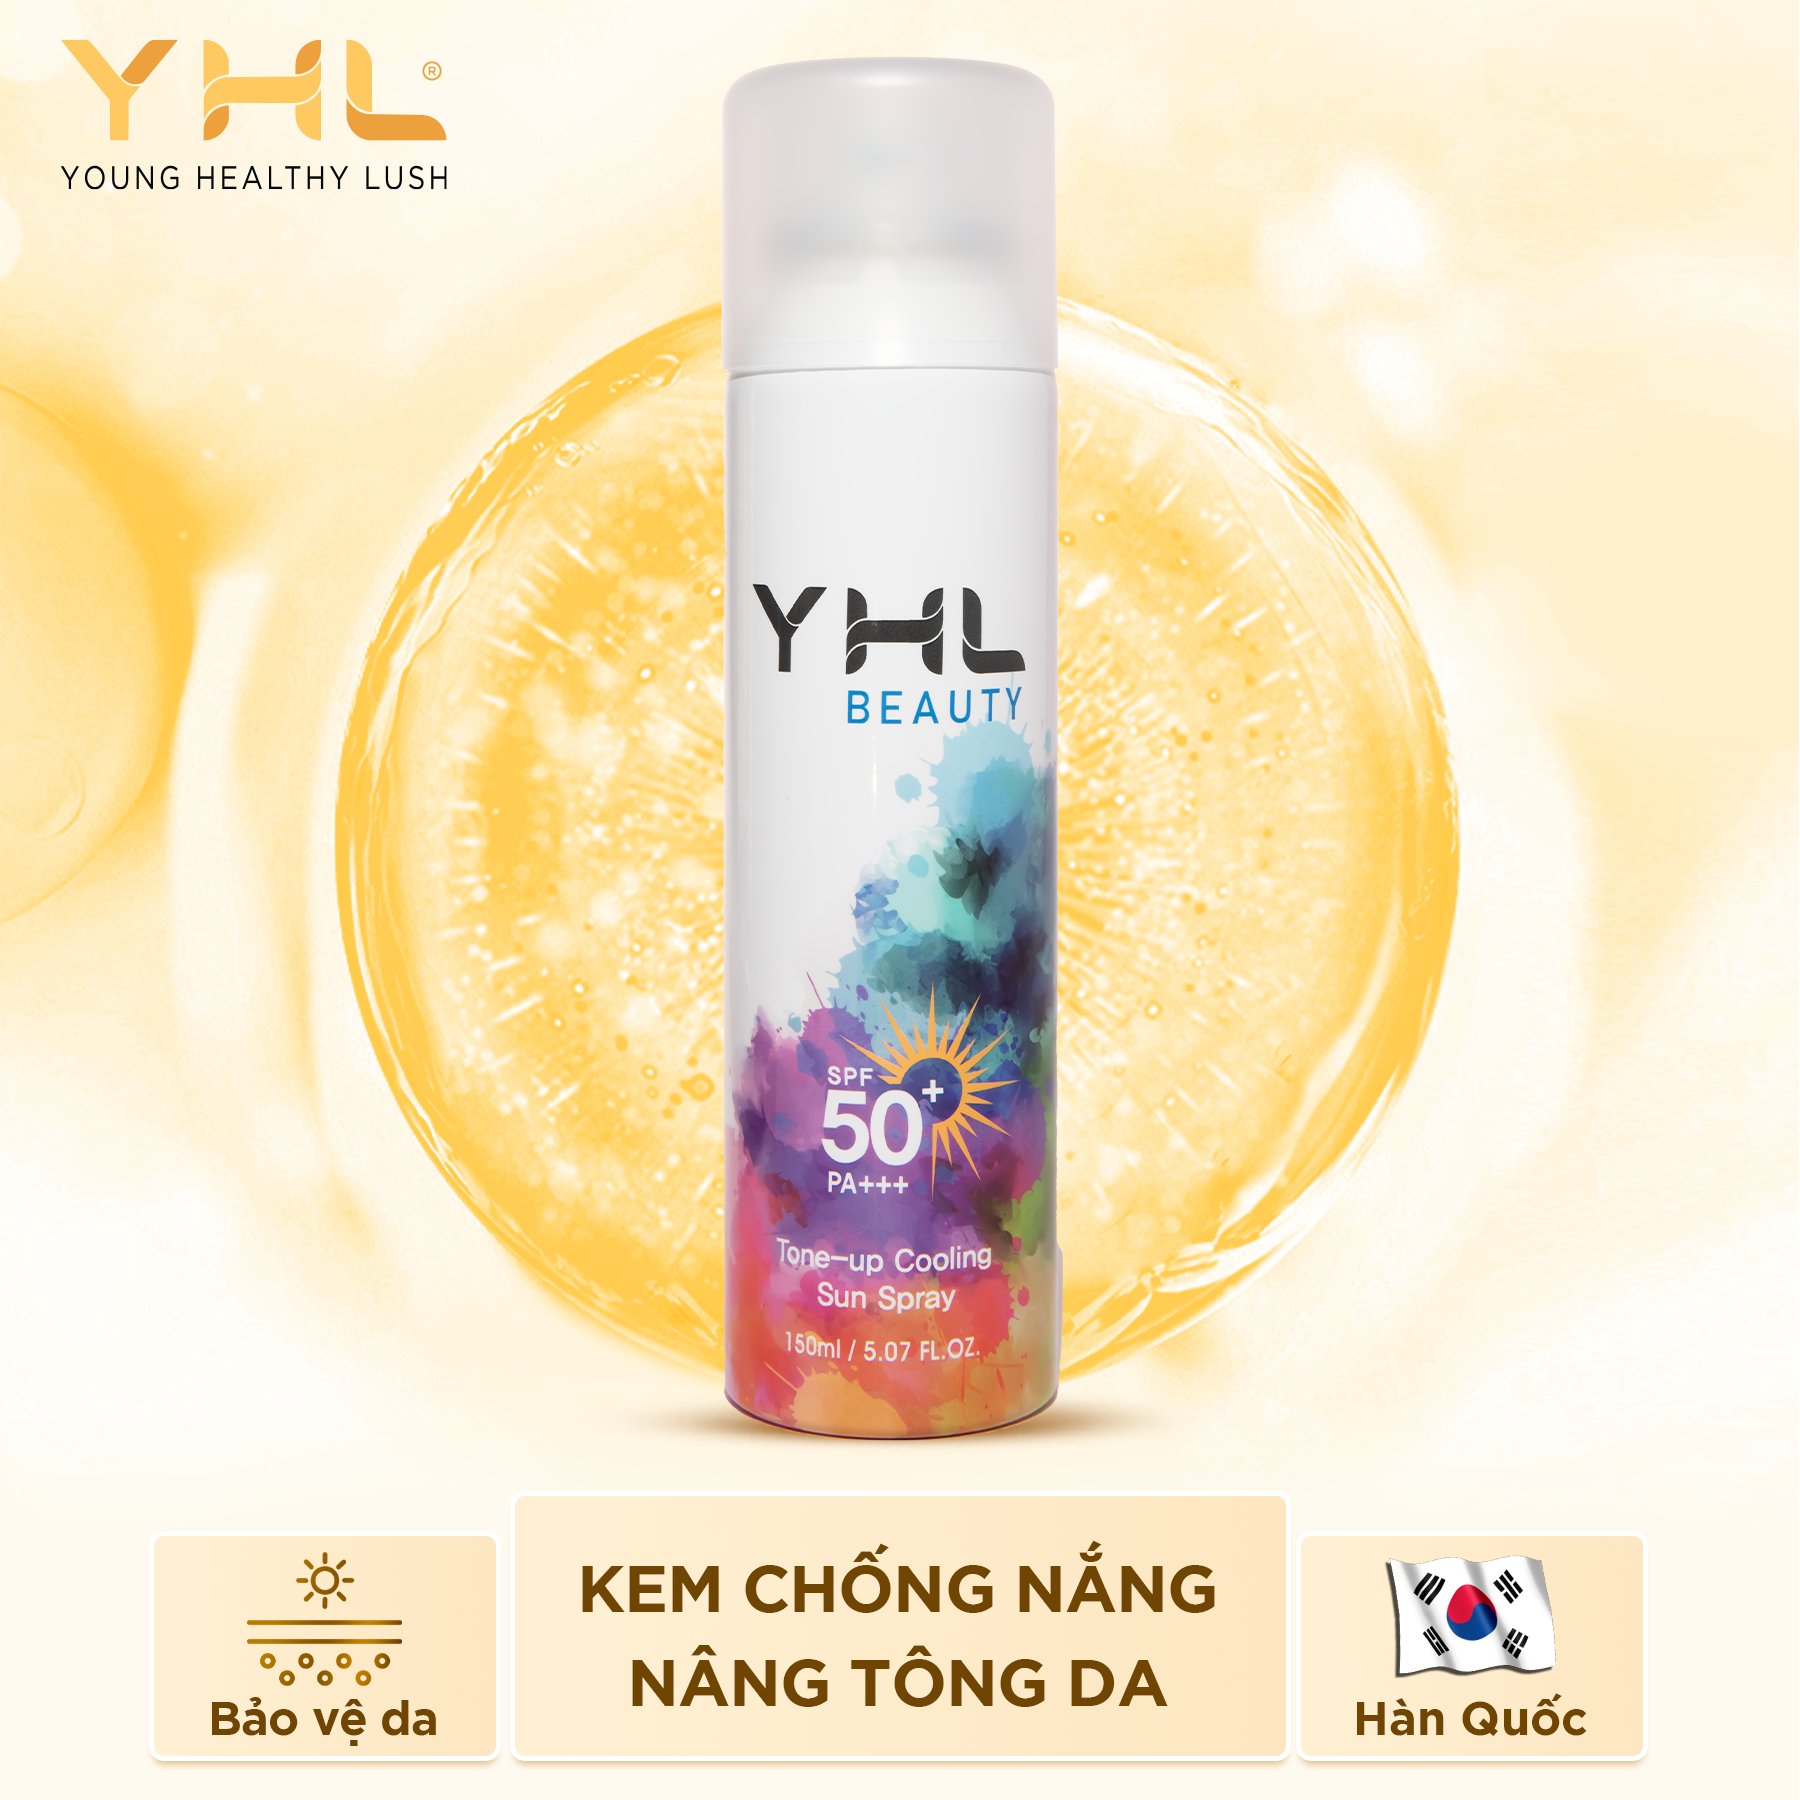 Kem chống nắng nâng tông da dạng xịt toàn thân YHL 150ml Hàn Quốc